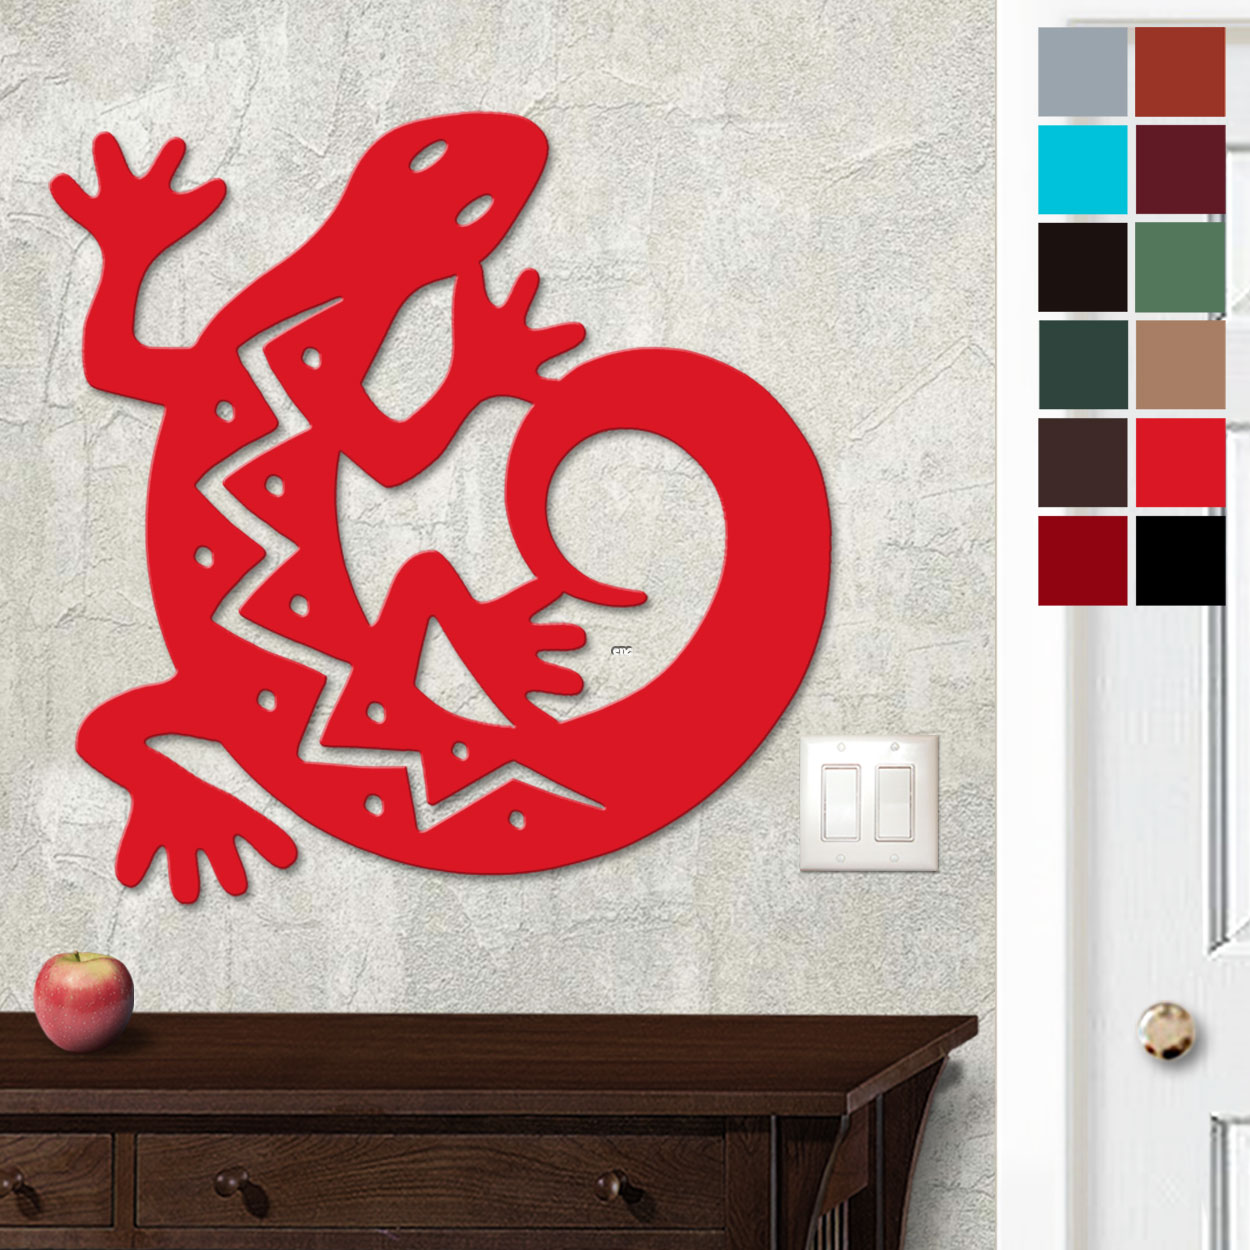 625009 - 18in or 24in Floating Metal Wall Art - C Gecko - Choose Color